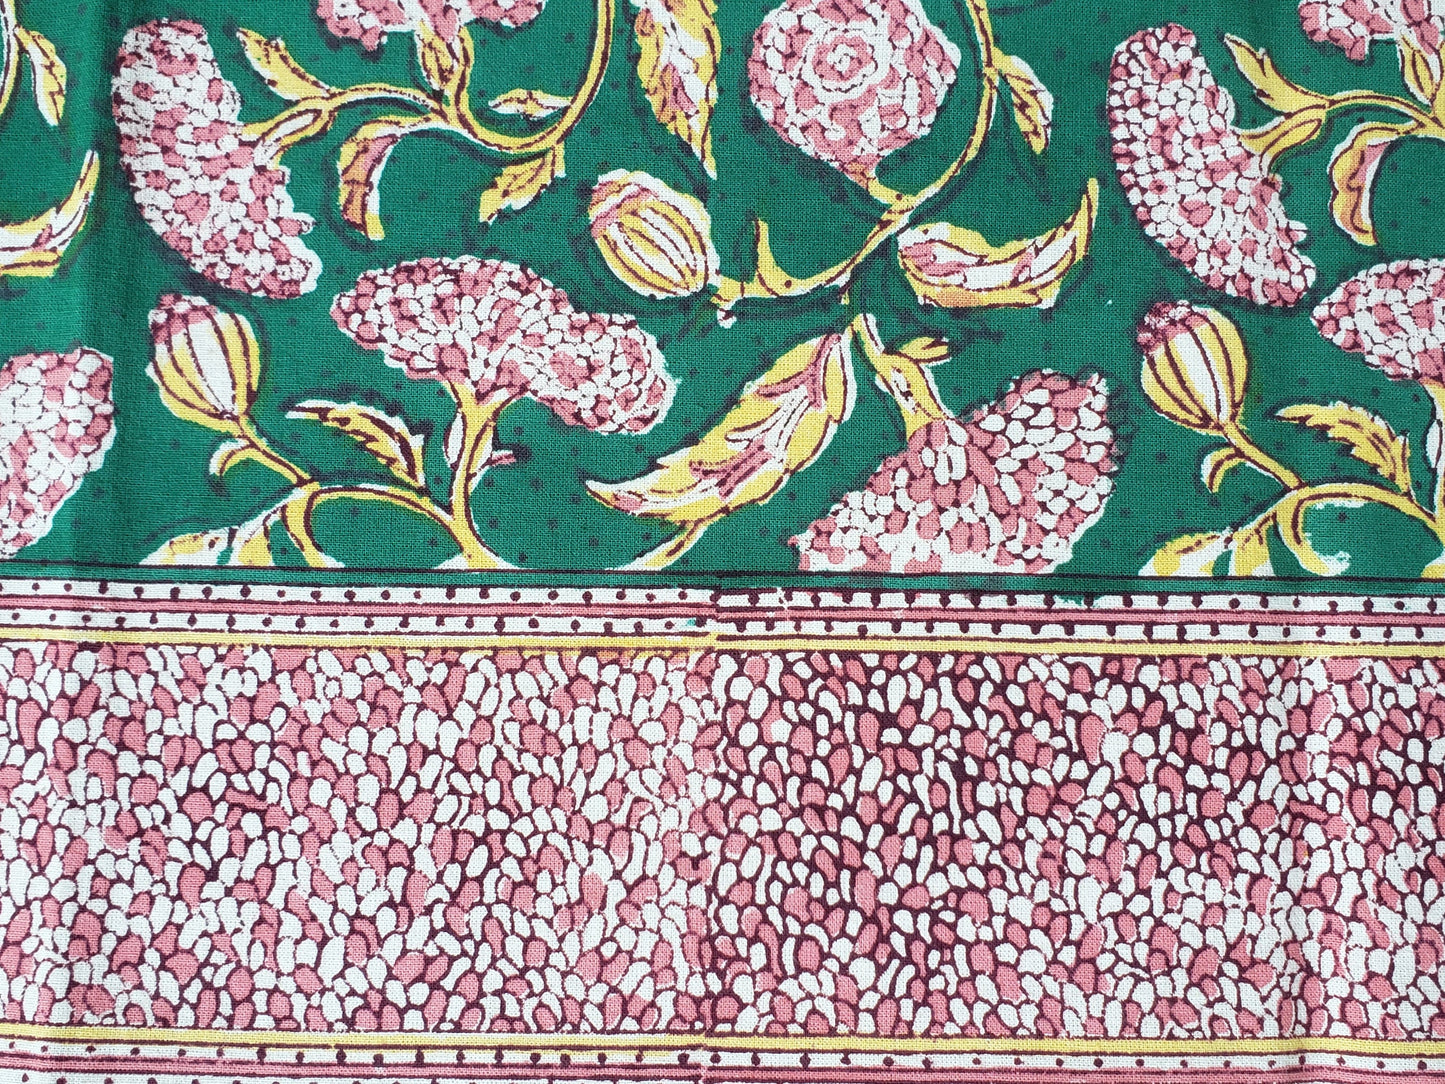 Detalle de borde de sobrecama 100% algodón estampado a mano, base verde obscuro con flores rosas. Hecho en la India.